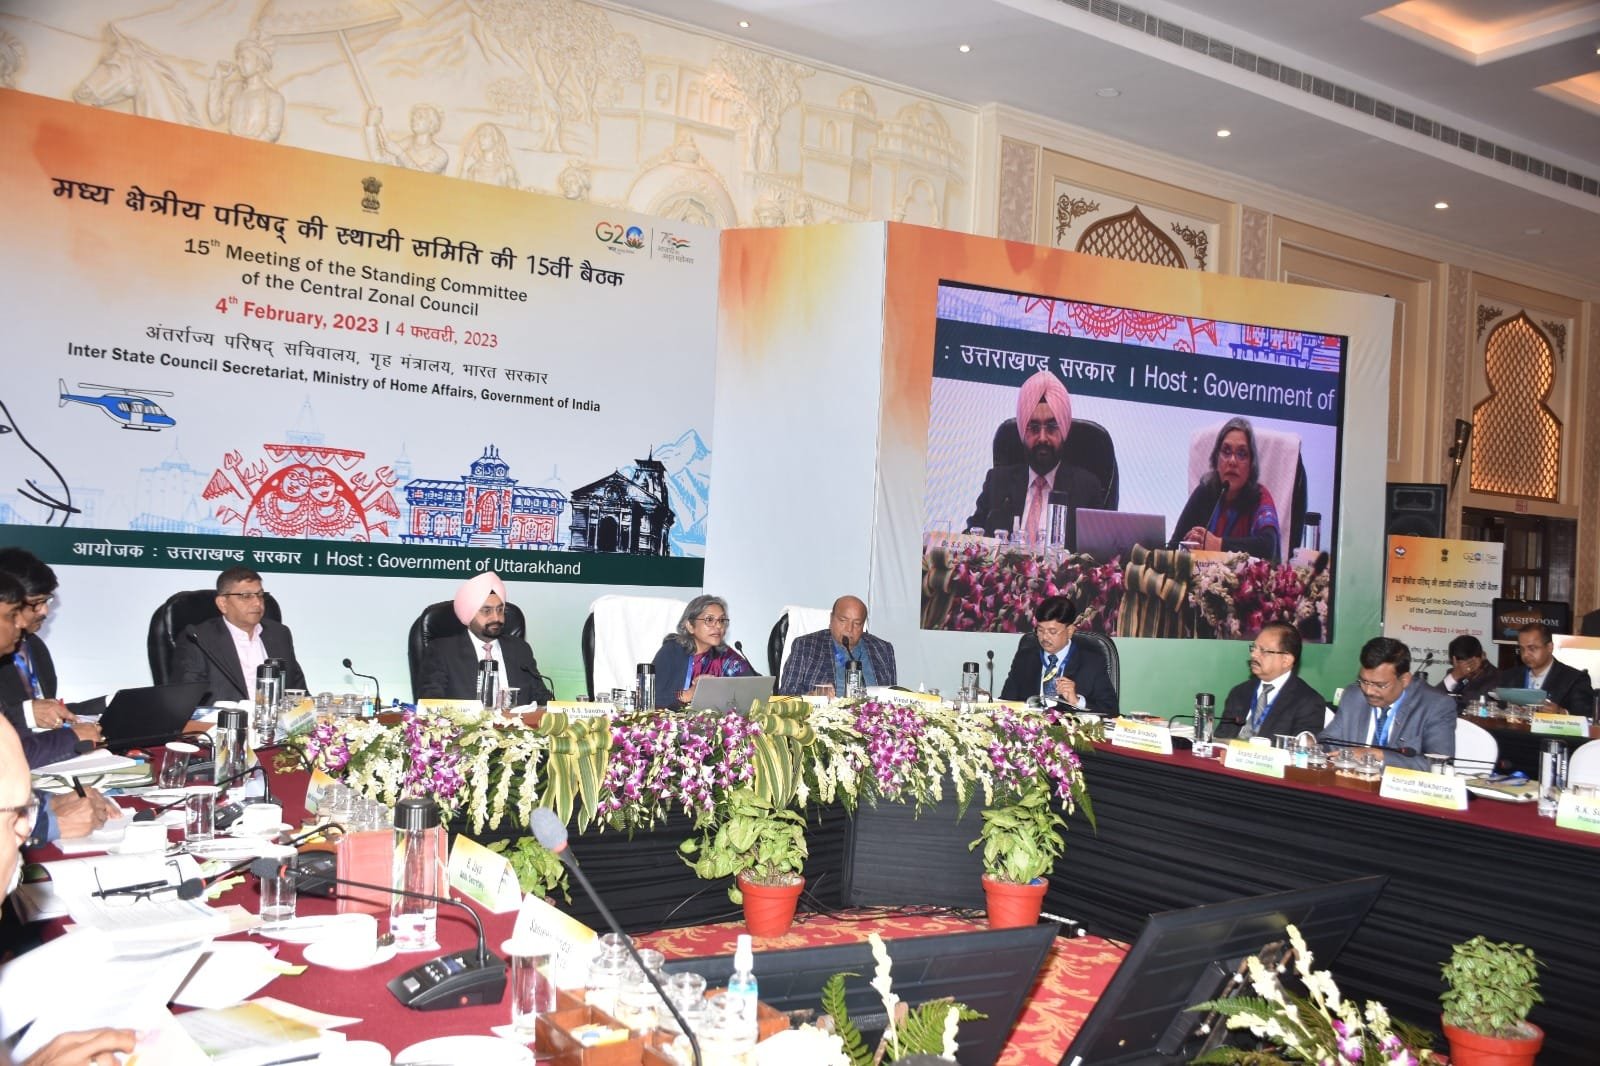 मुख्य सचिव डॉ. एस.एस. संधु की अध्यक्षता में मध्य क्षेत्रीय परिषद की स्थायी समिति की 15वीं बैठक का हुआ आयोजन